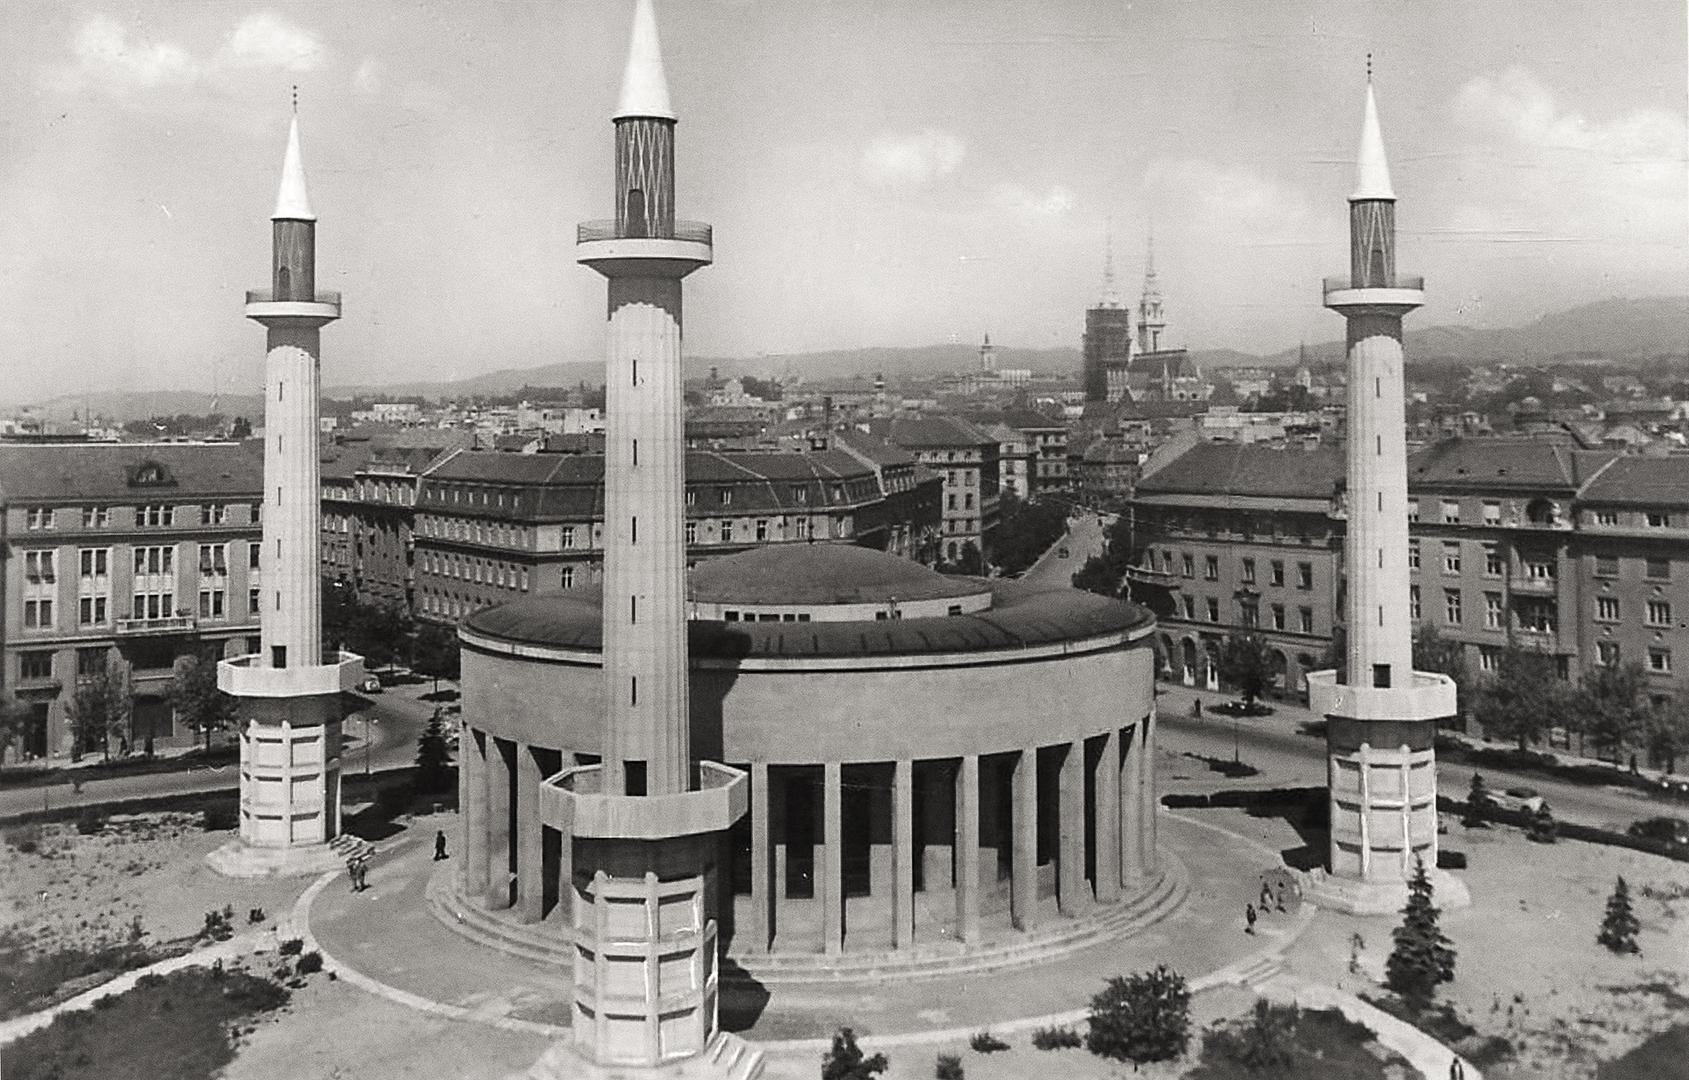 1944., tadašnji Trg Kulina bana, minareti su postavljeni 1941. godine kada poglavnik NDH Ante Pavelić donosi odluku da se pretvori u džamiju

